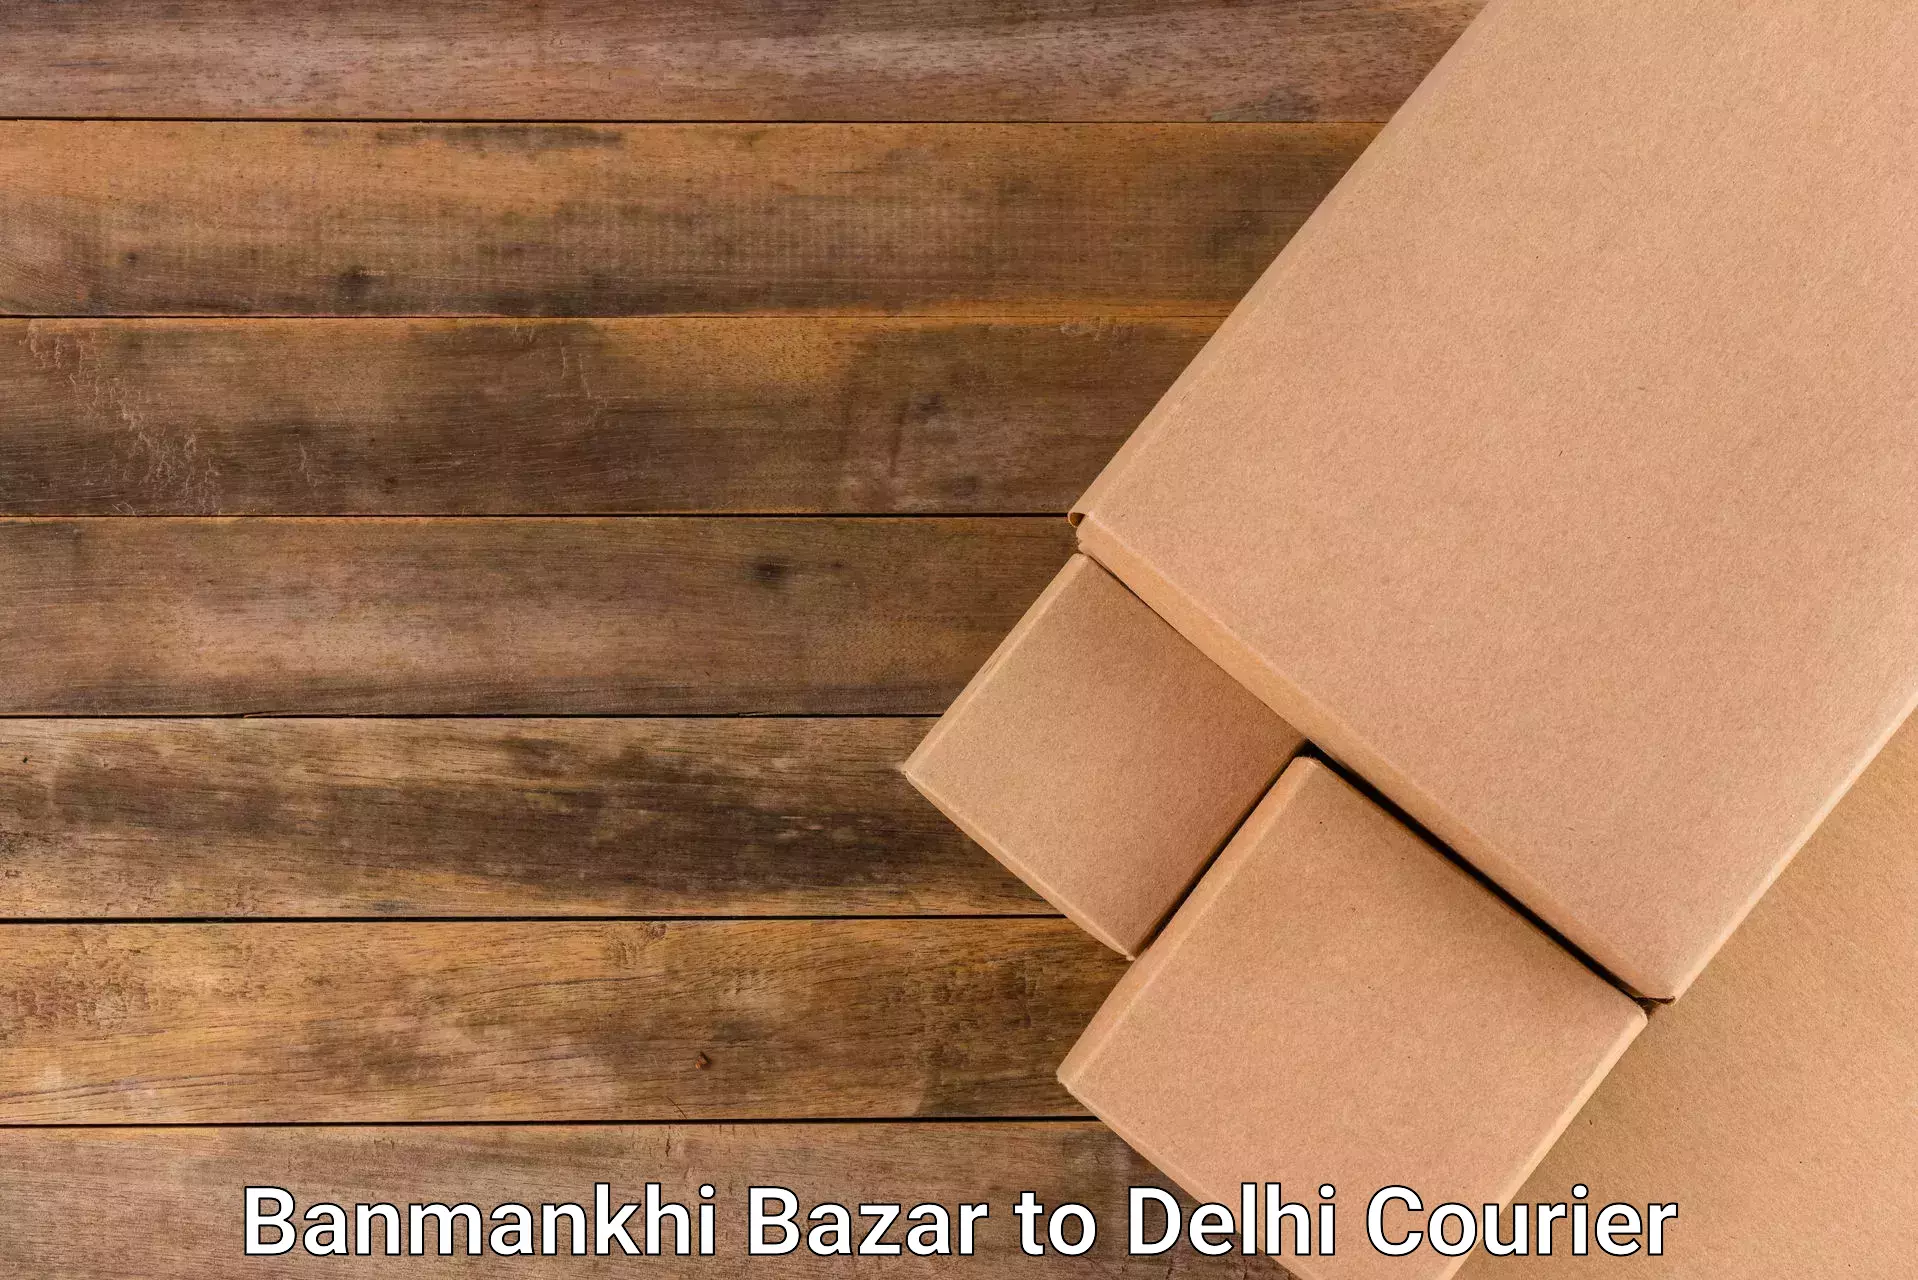 Easy access courier services Banmankhi Bazar to Subhash Nagar